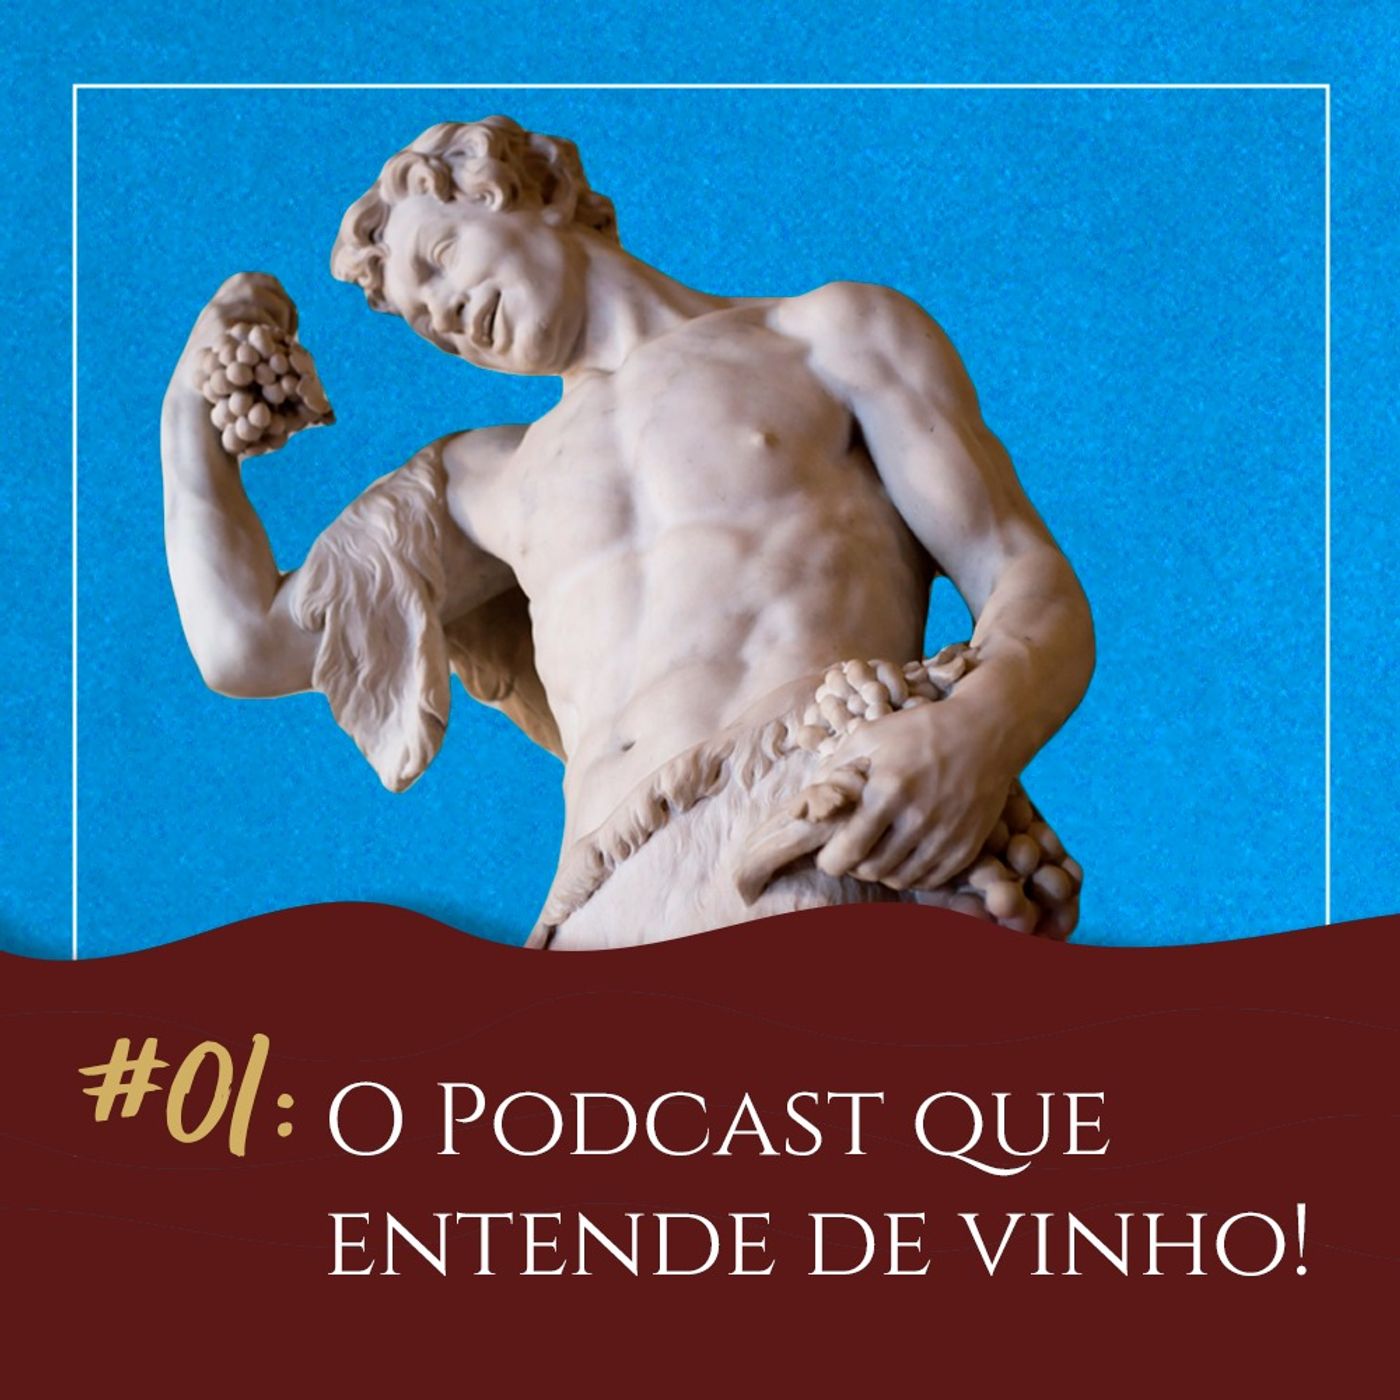 #01 – O Podcast que entende de vinho!